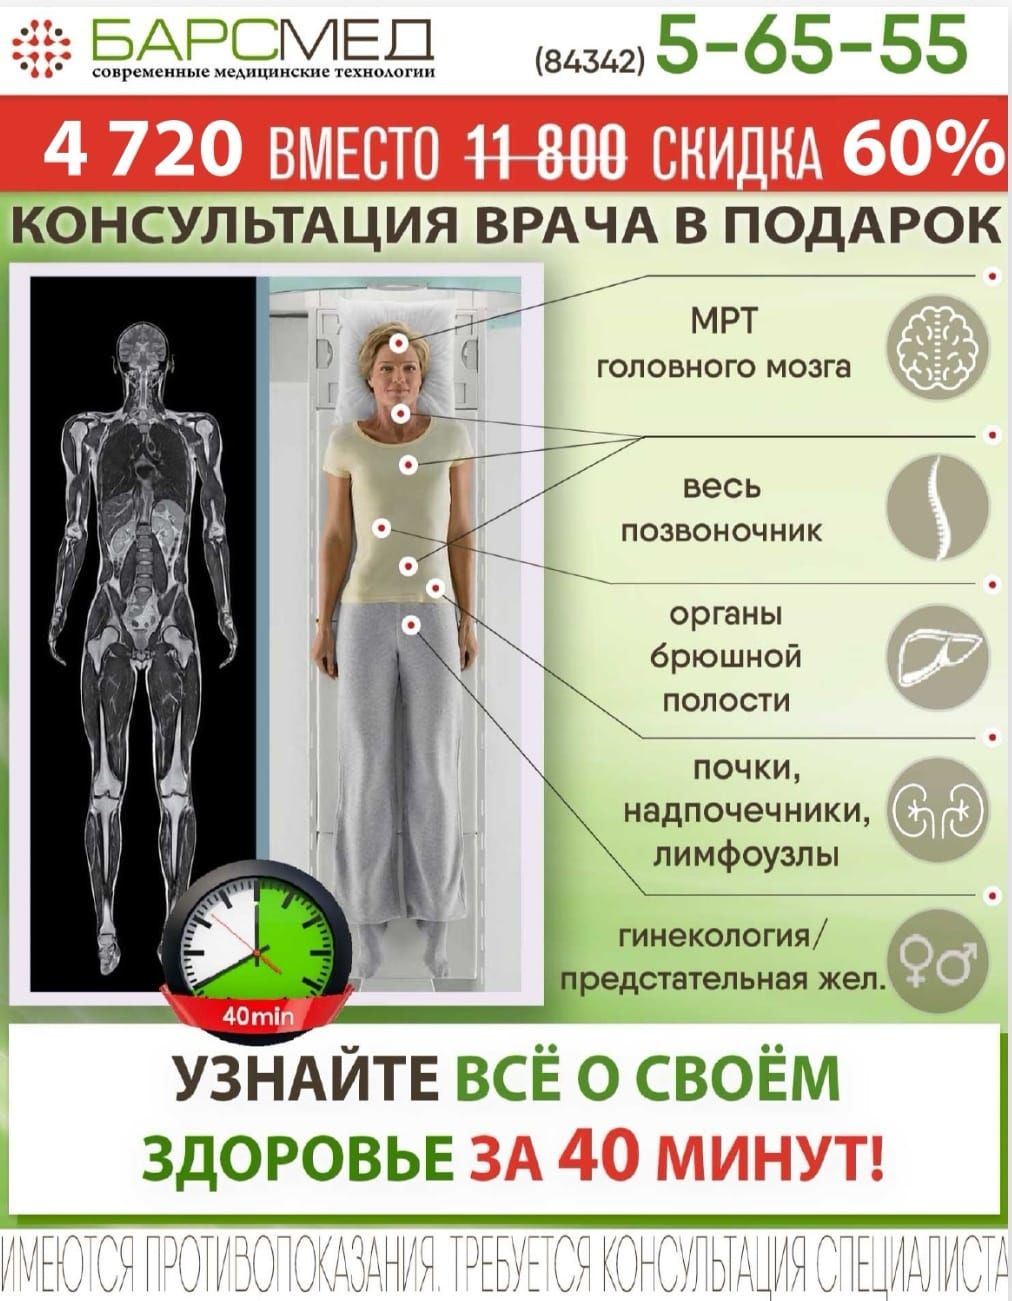 Хотите получить  информацию о своём здоровье за 40 минут ещё и со скидкой 50%?* За 40 минут мы сканируем всё тело